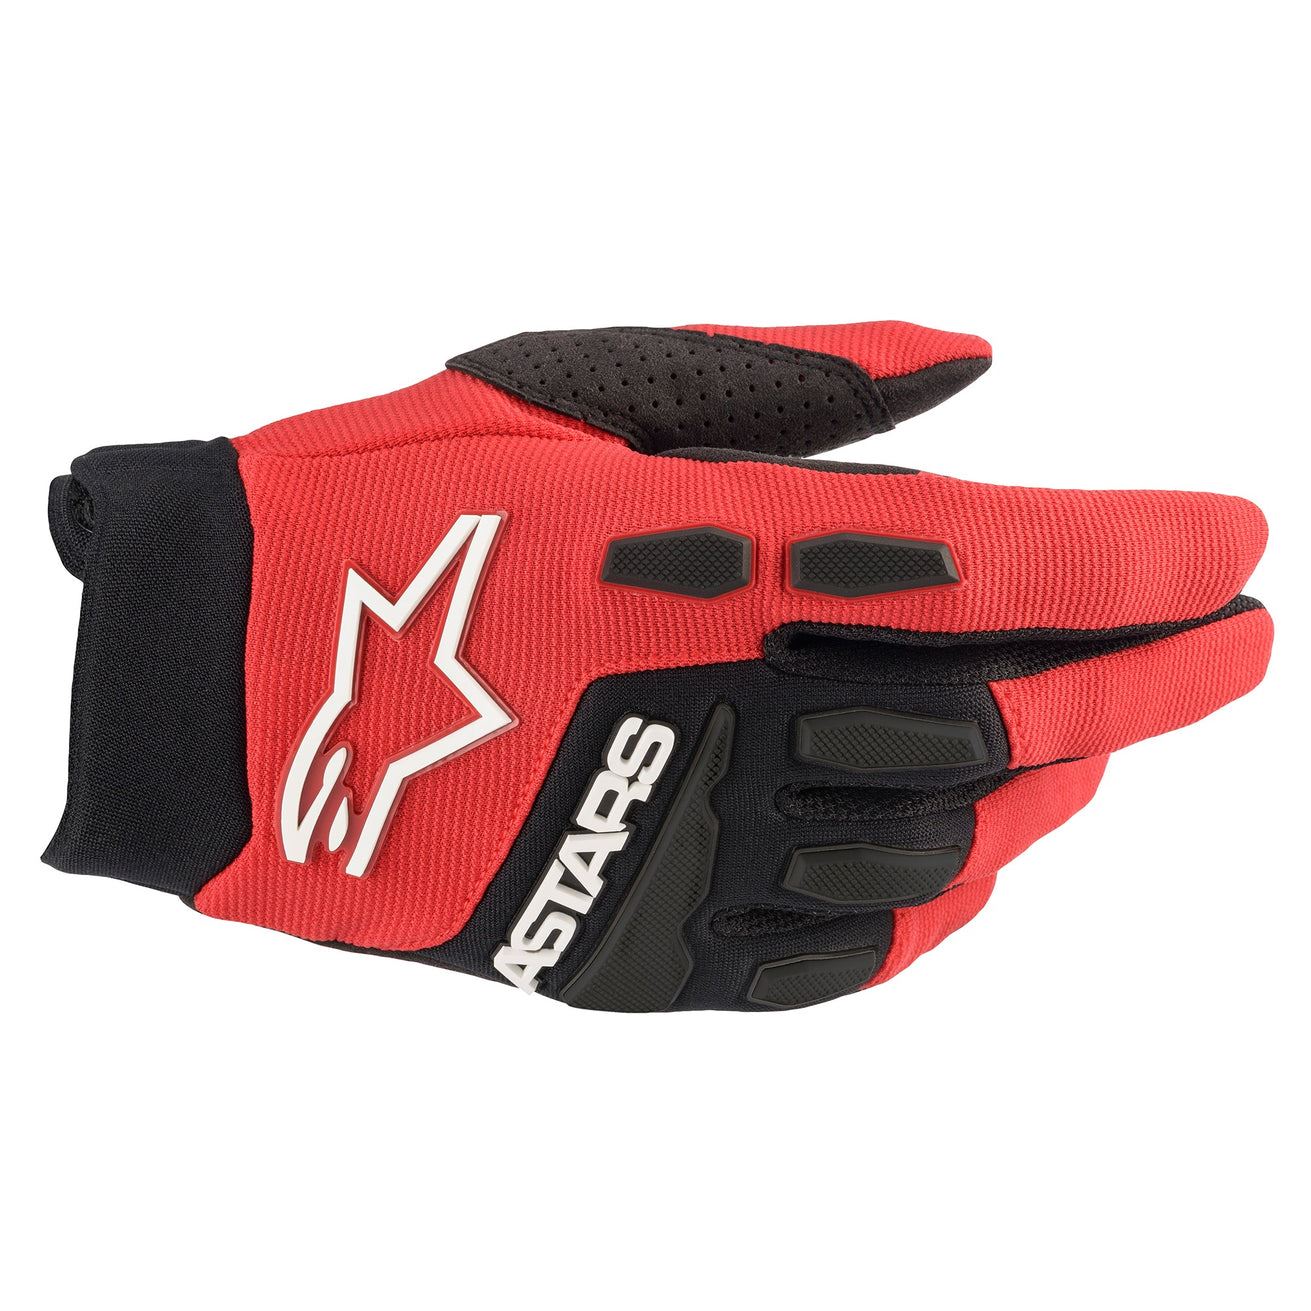 Alpinestars 2024 Full Bore Motocross Gloves Yellow Fluo Black